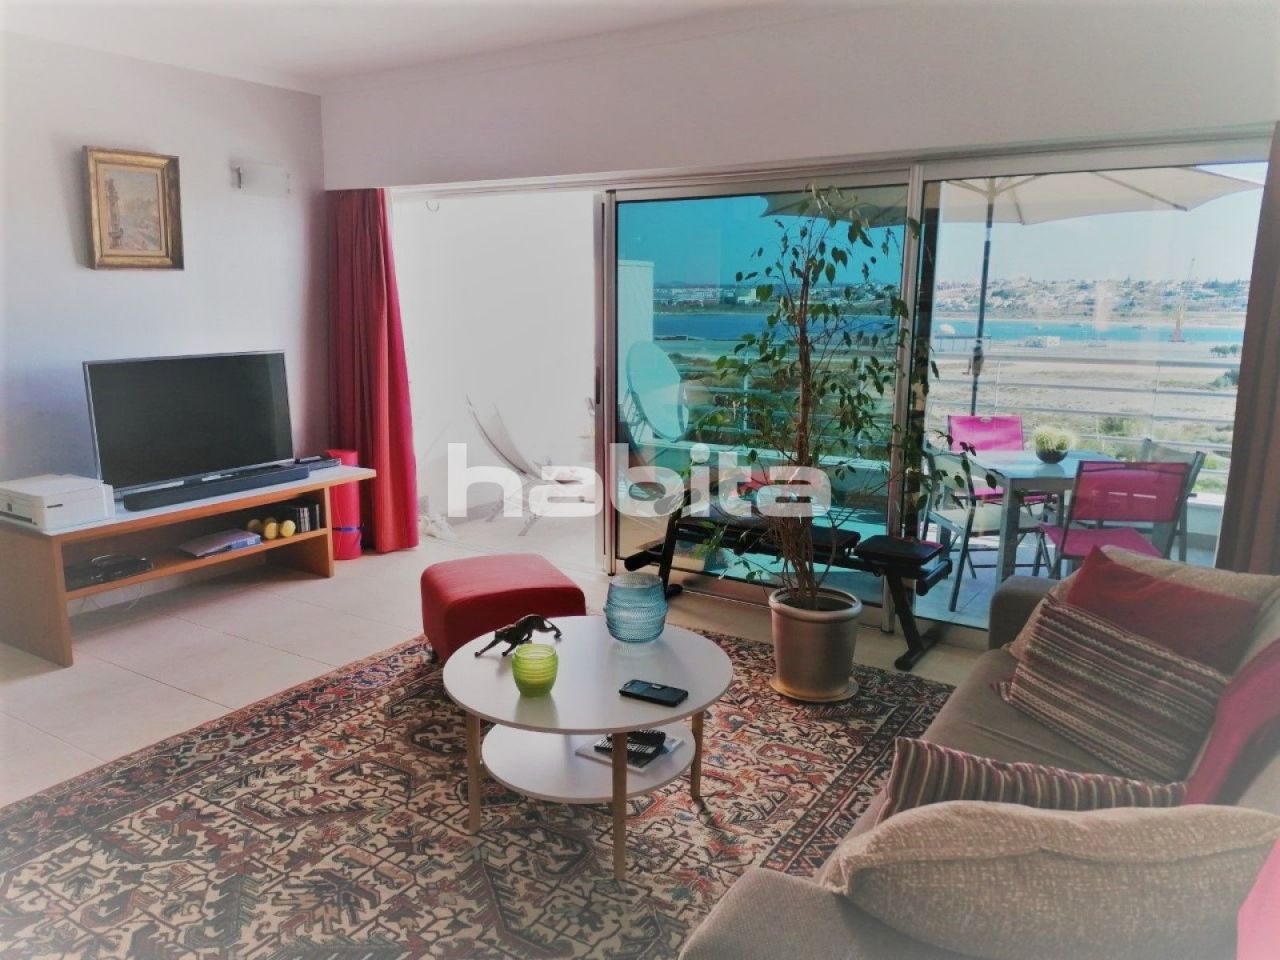 Apartment in Portimao, Portugal, 65 sq.m - picture 1